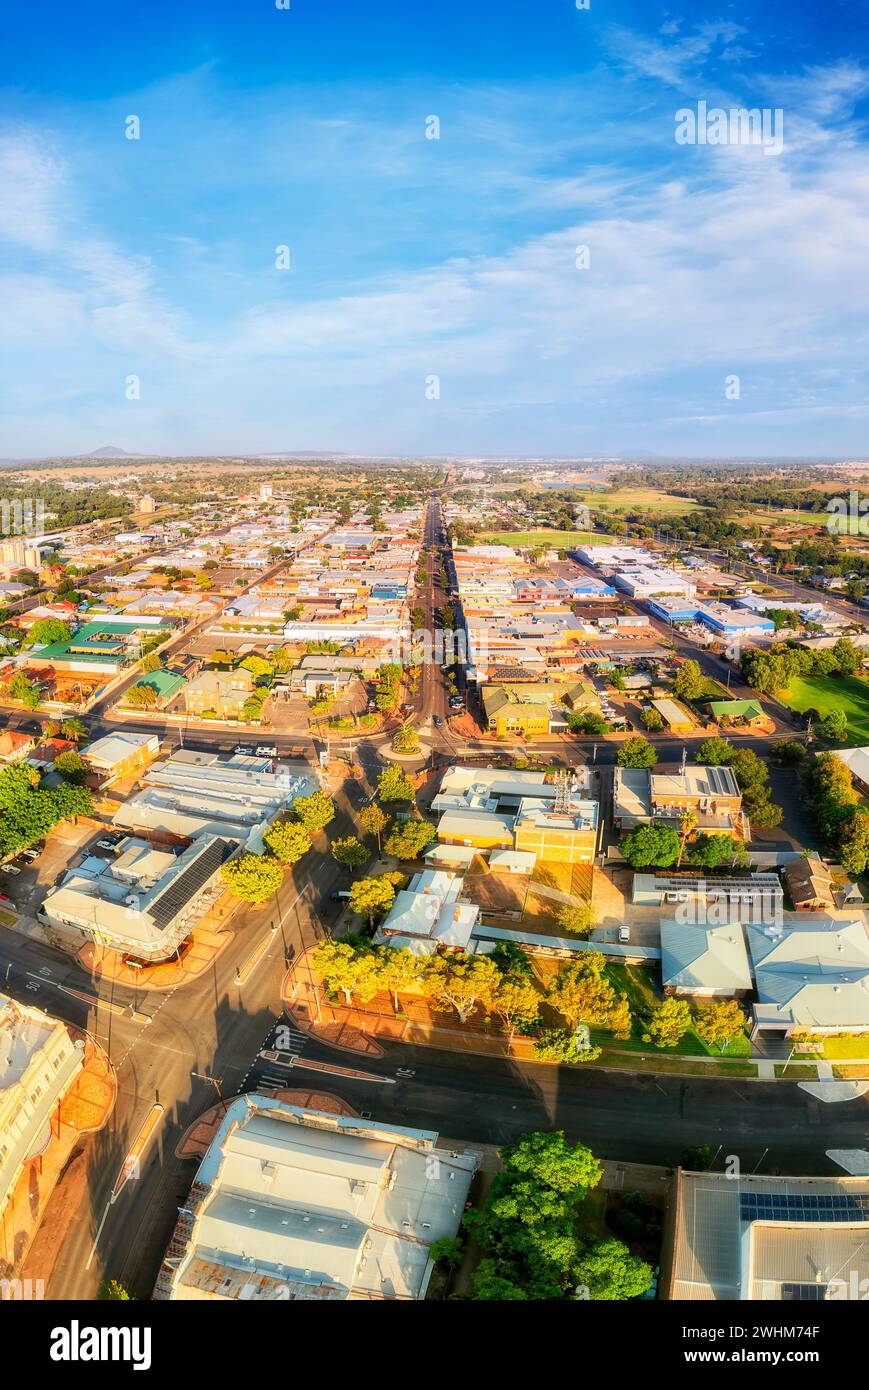 Downtown of Gunnedah ländliche regionale Stadt im australischen Outback von New Engand, NSW - vertikales Luftpanorama. Stockfoto